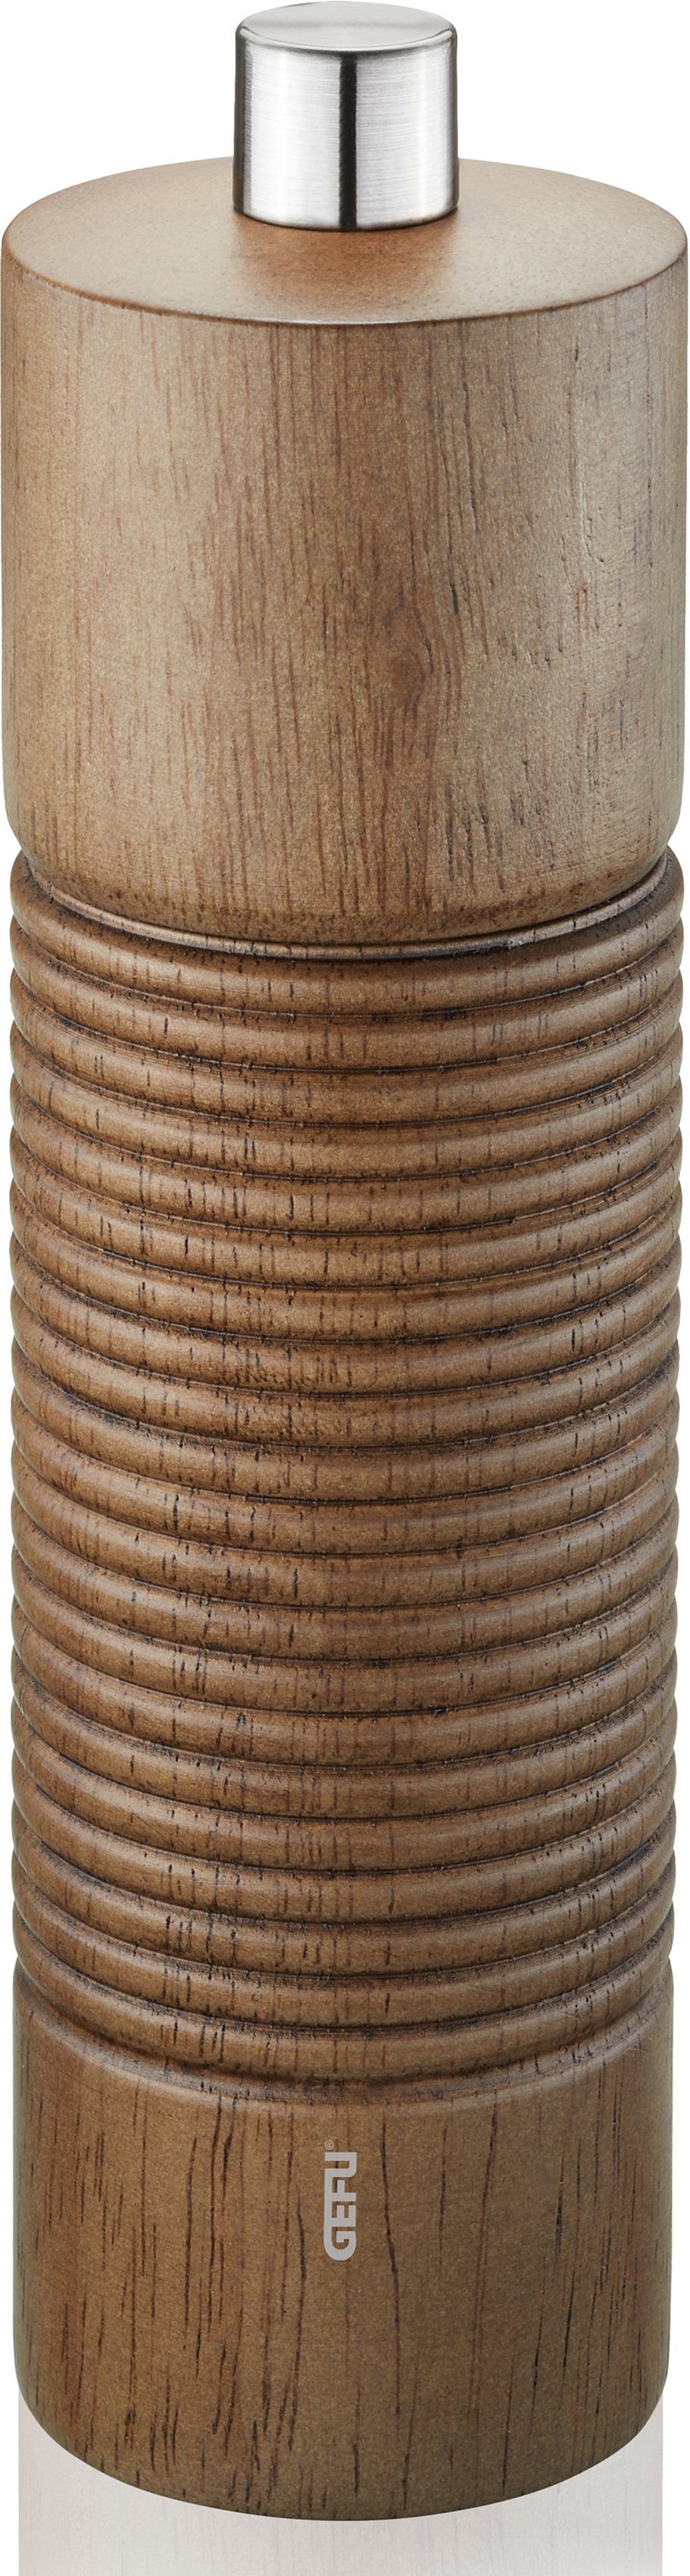 GEFU Salz-/Pfeffermühle TEDORO manuell, stufenlos holzfarben/silberfarben Keramikmahlwerk einstellbares